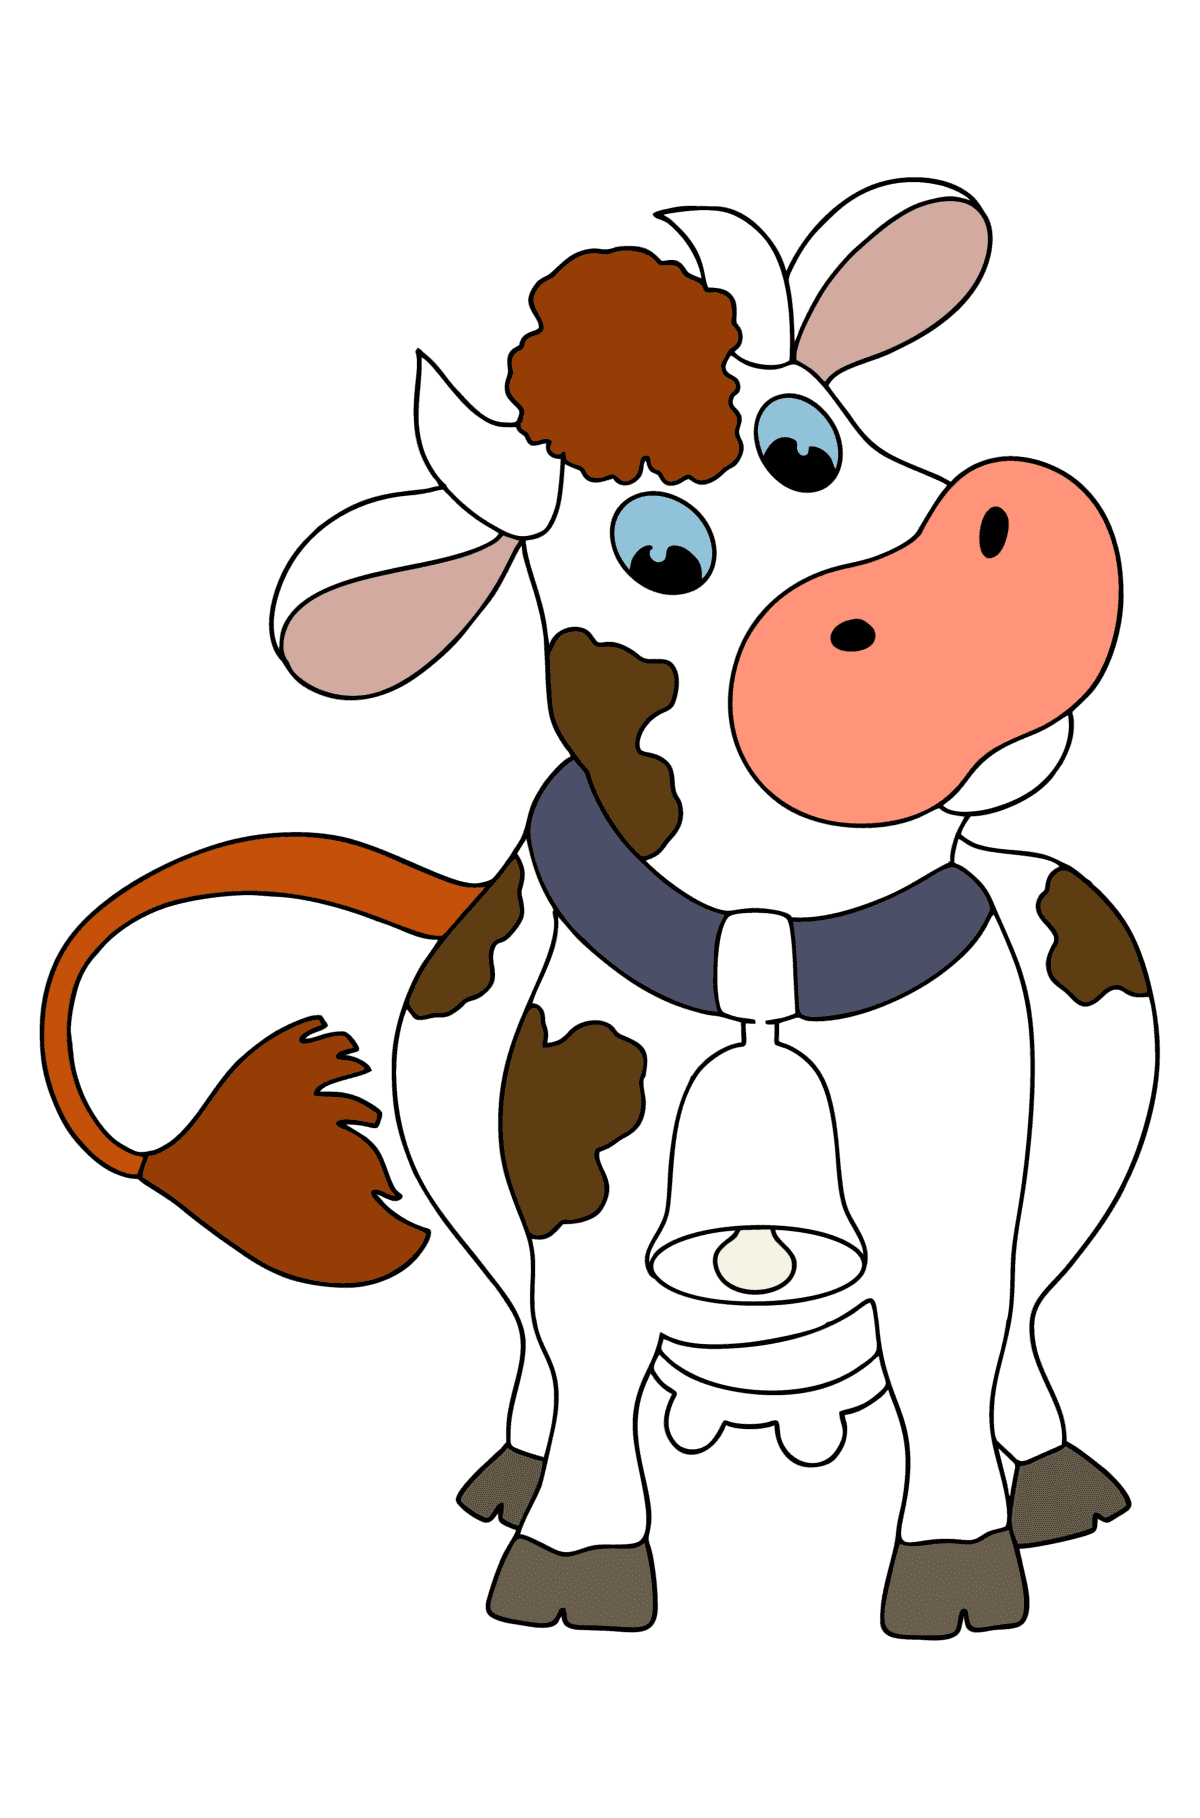 Disegno di Mucca con campana da colorare - Disegni da colorare per bambini